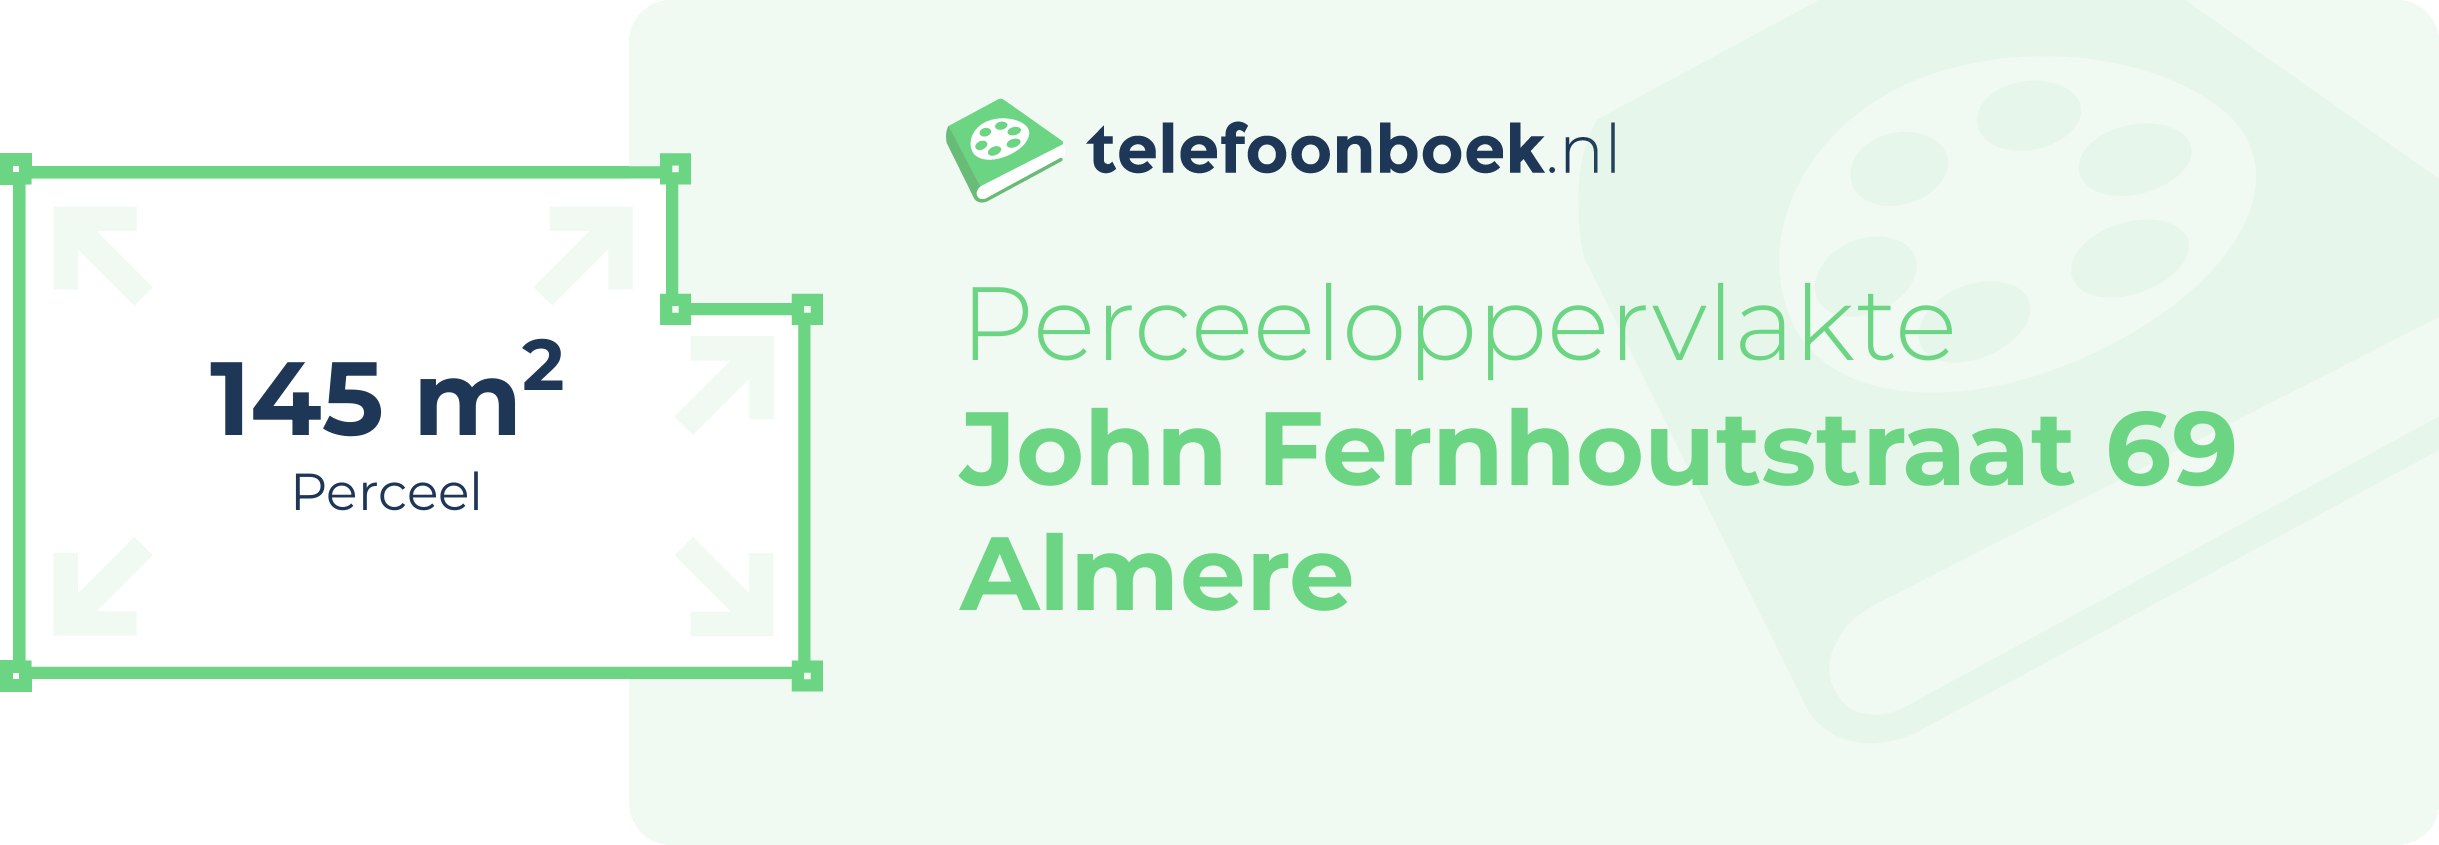 Perceeloppervlakte John Fernhoutstraat 69 Almere